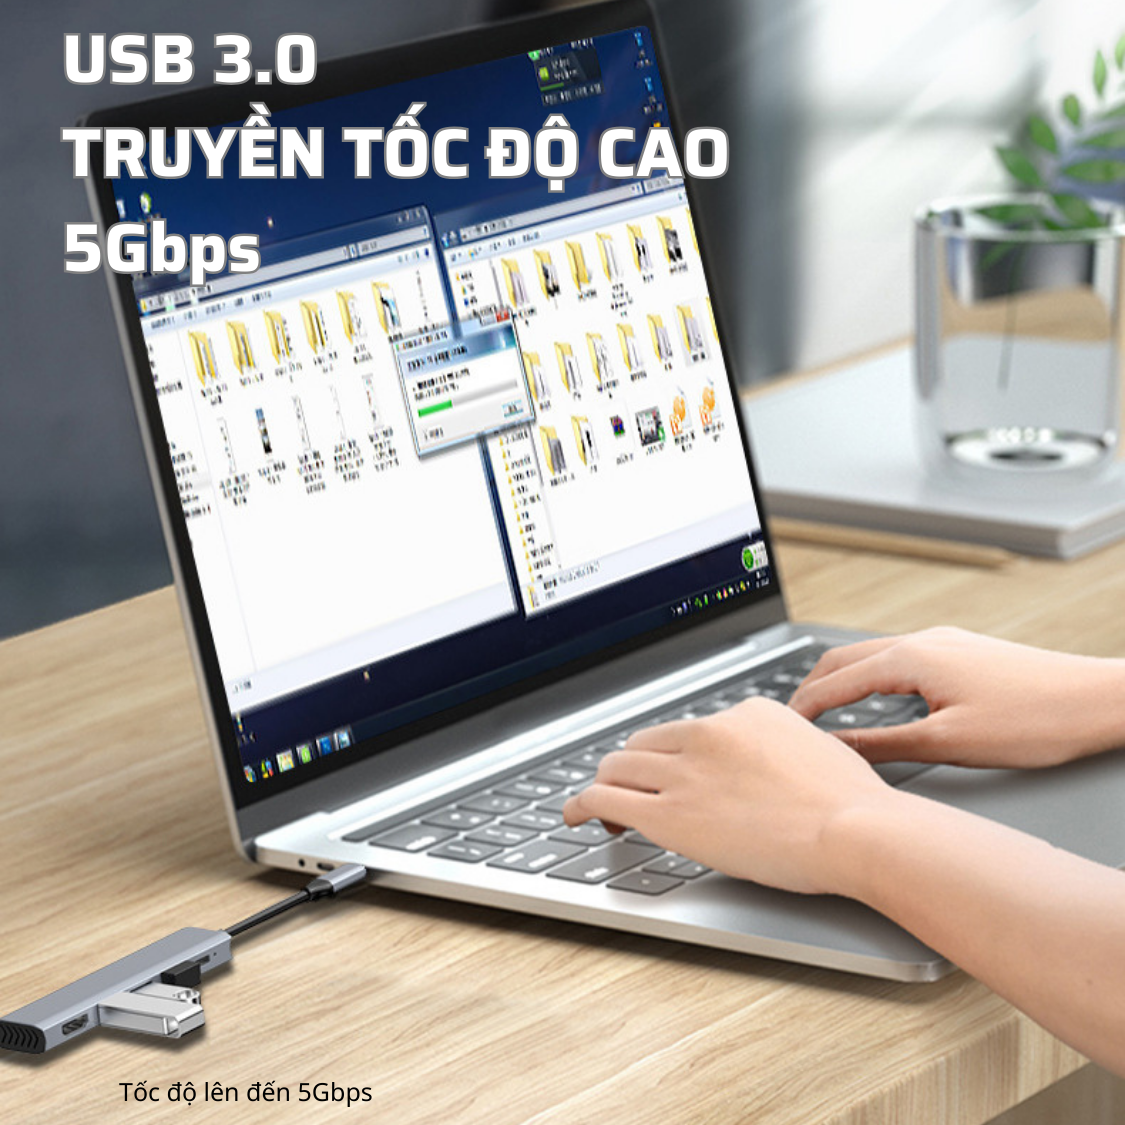 Hub Chuyển Đổi Type C Chia 5 Cổng (5 in 1) HDMI / USB 3.0 / USB 2.0 / PD Hỗ Trợ Sạc Nhanh, Có Khe Tản Nhiệt - Hàng Chính Hãng Tamayoko